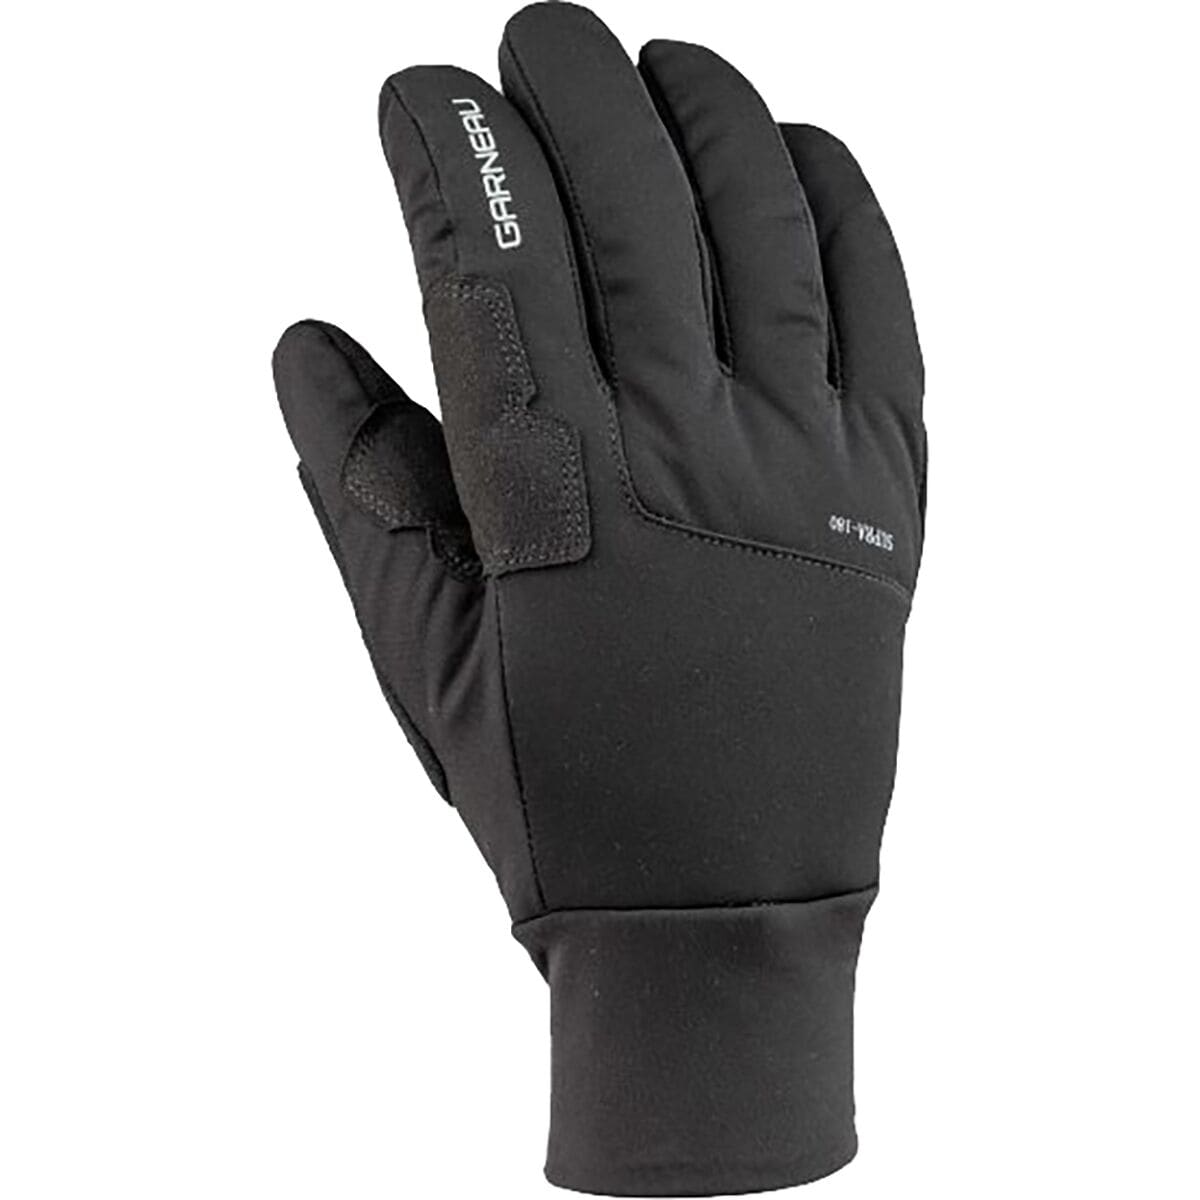 Louis Garneau Supra 180 Glove - Men's Black, L